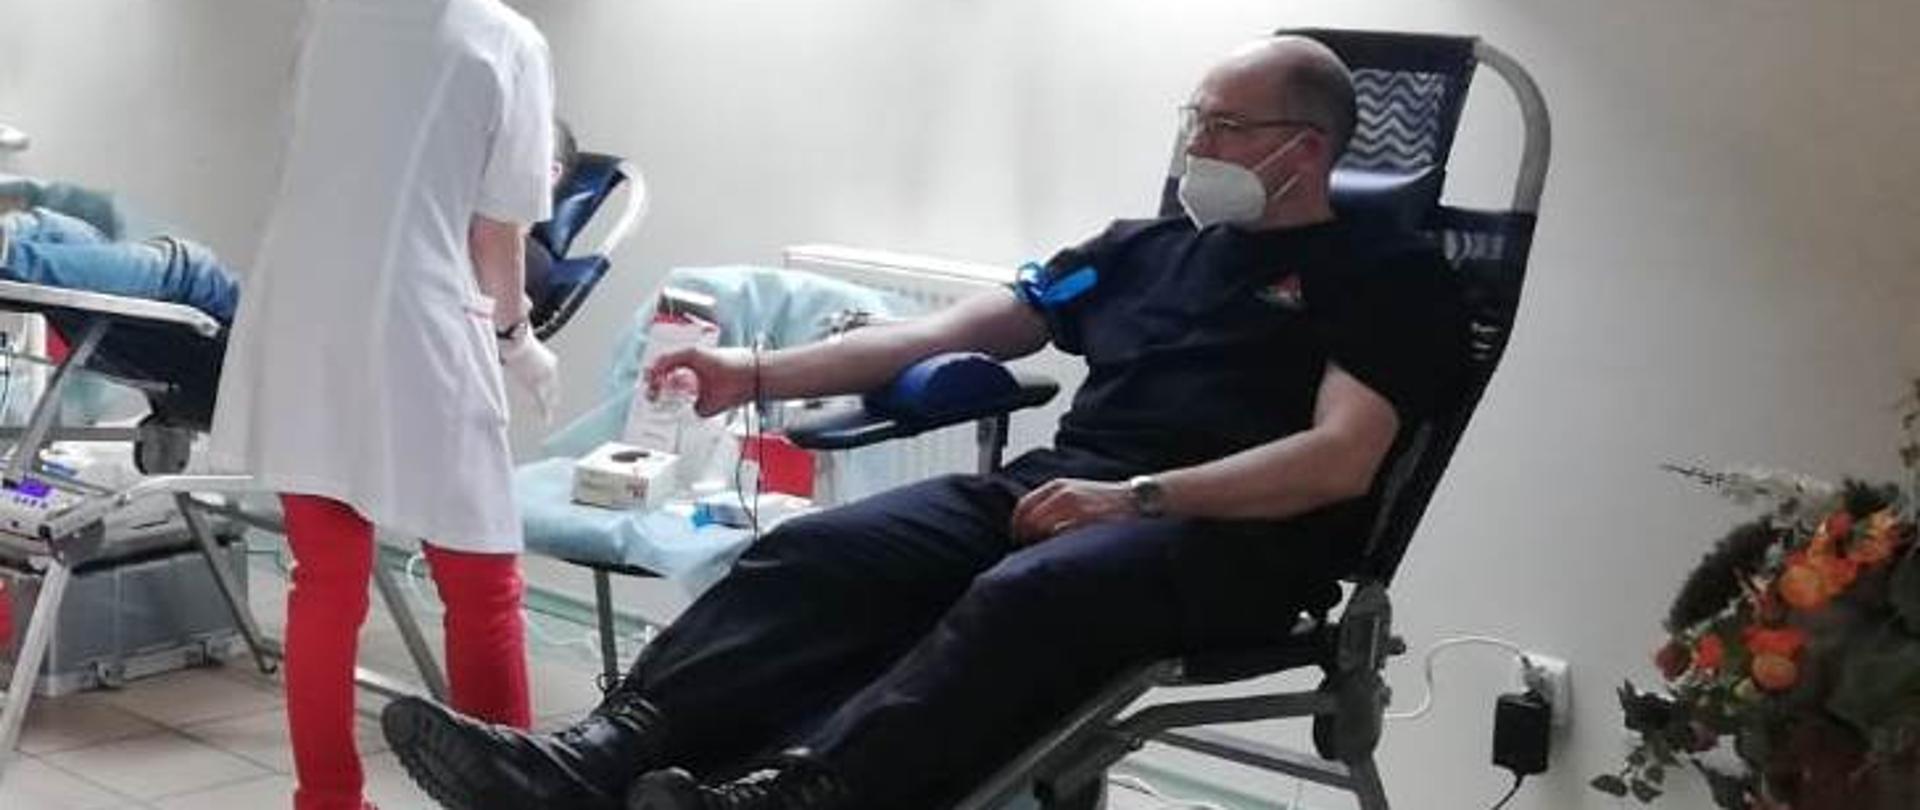 Na zdjęciu widać Komendanta podczas oddawania krwi